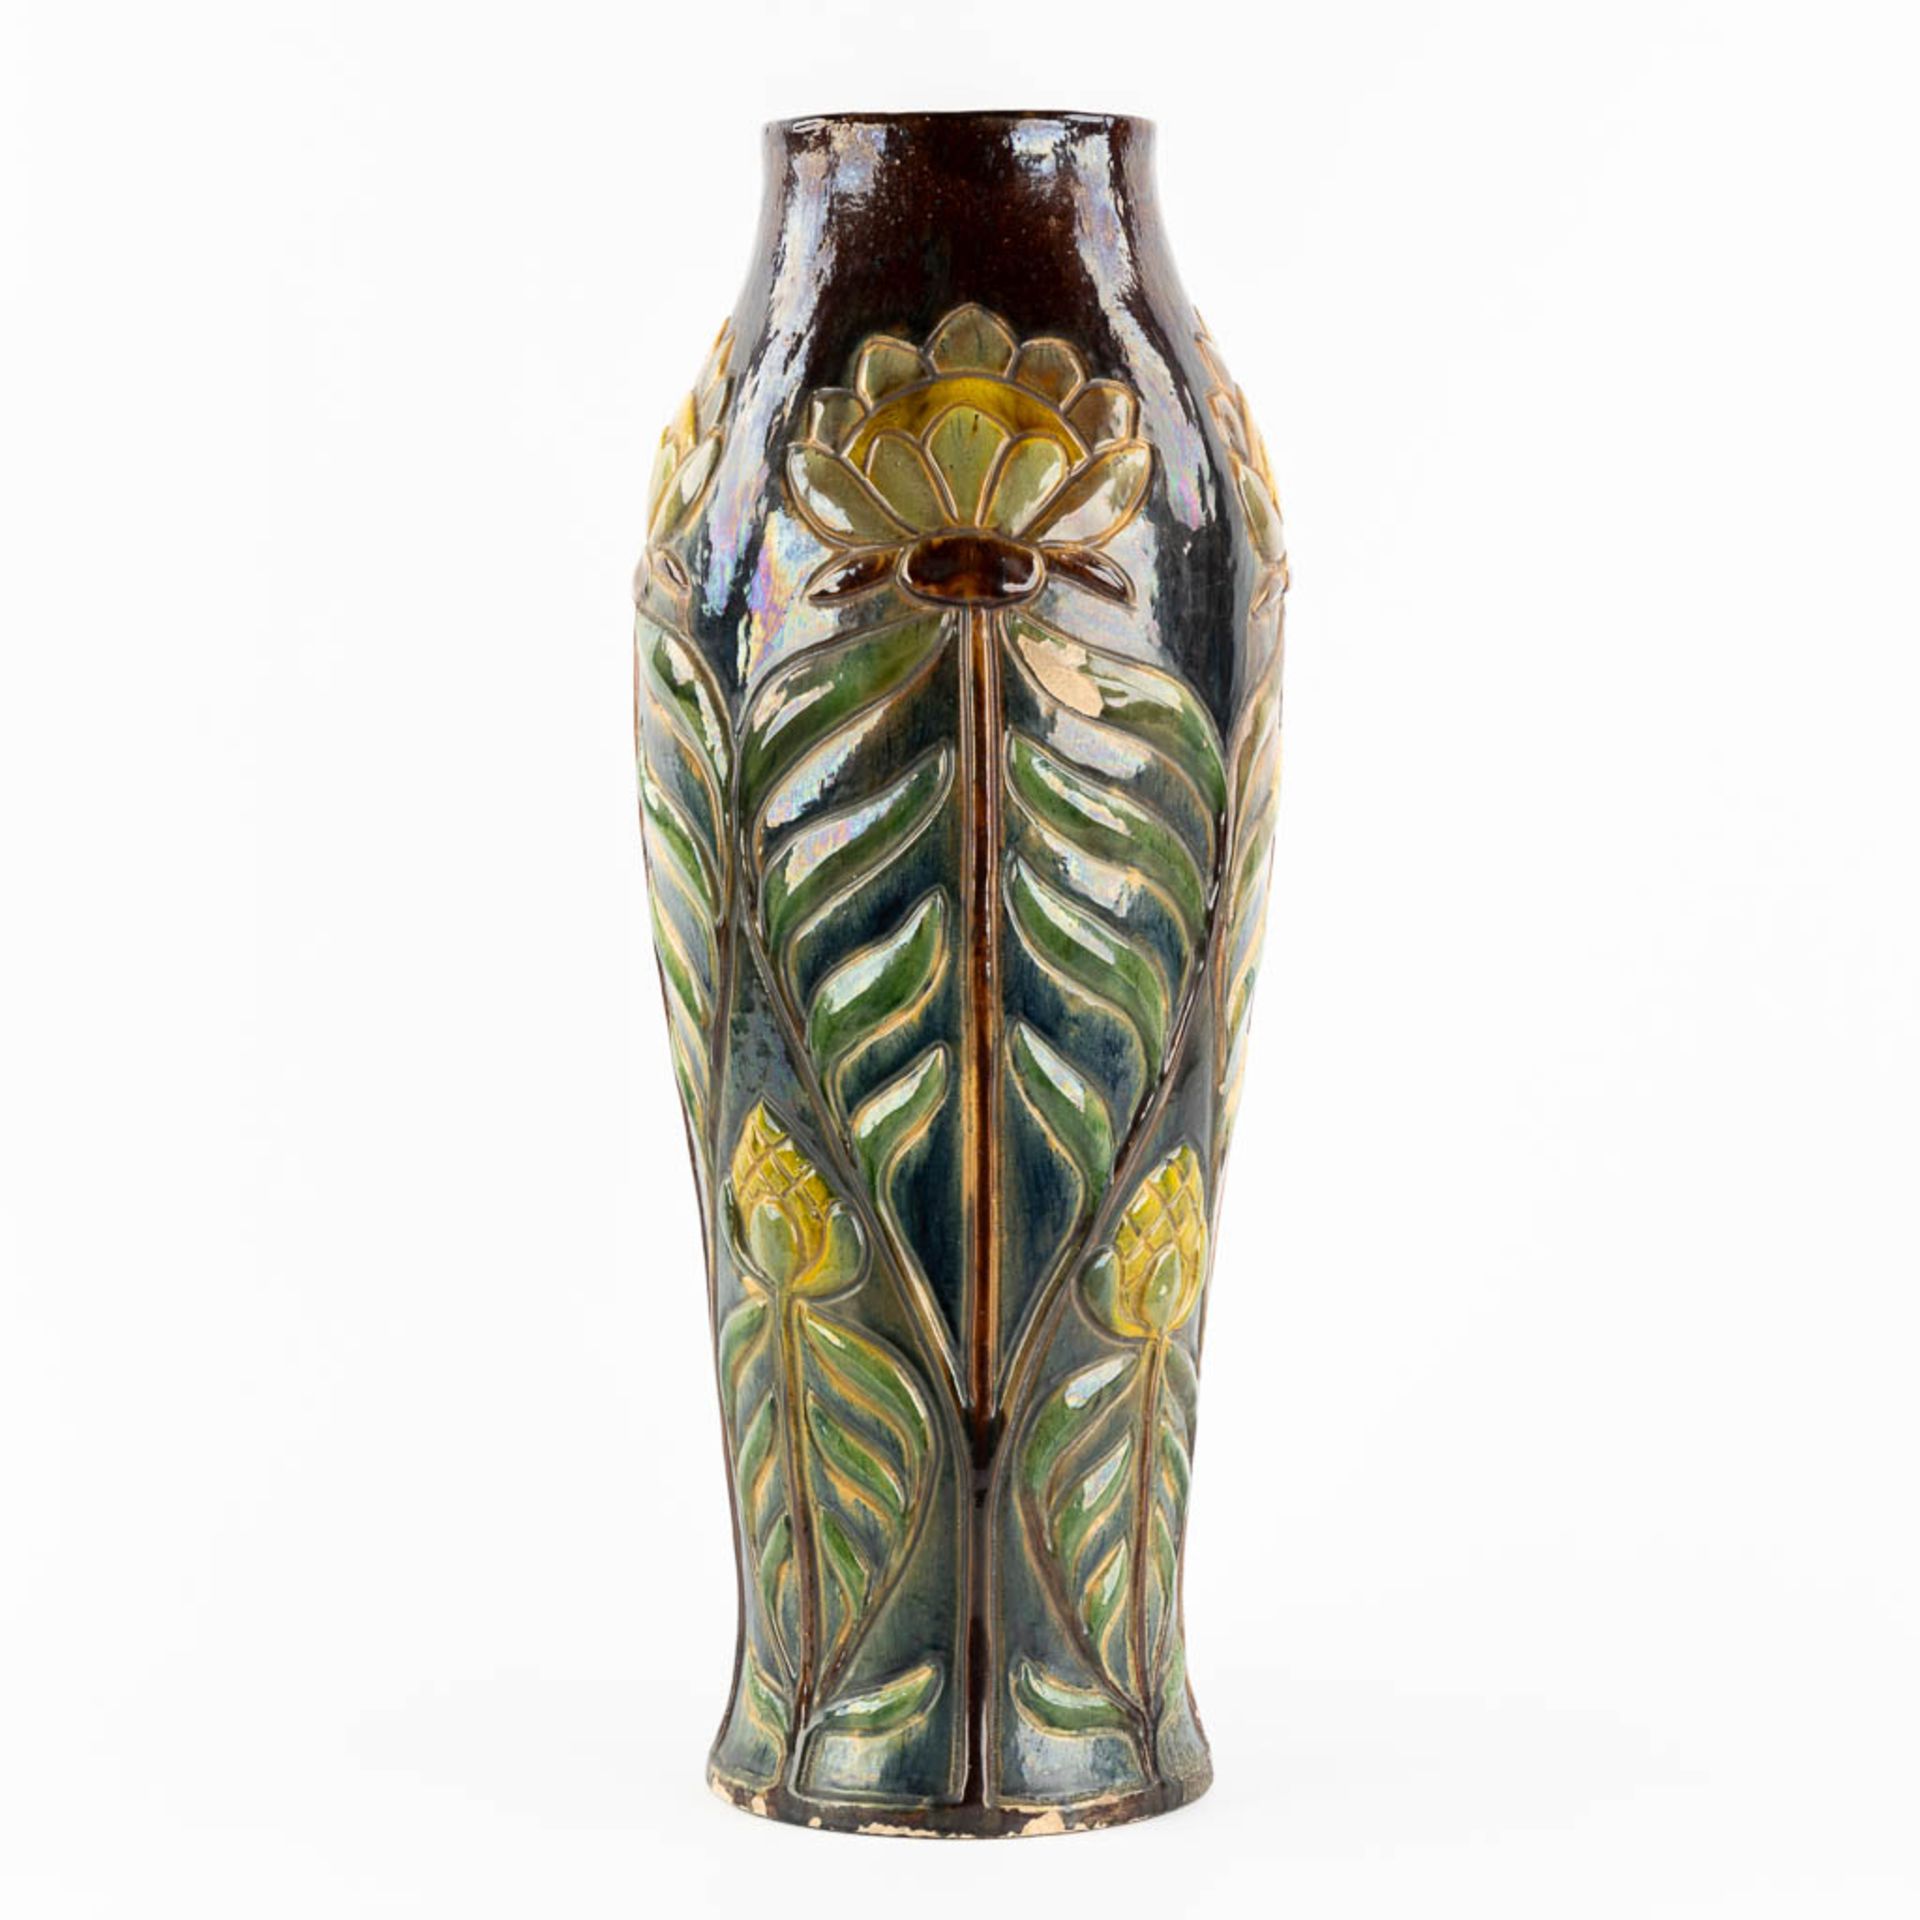 Flemish Earthenware, a large vase, Art Nouveau. (H:61,5 x D:22 cm) - Image 4 of 11